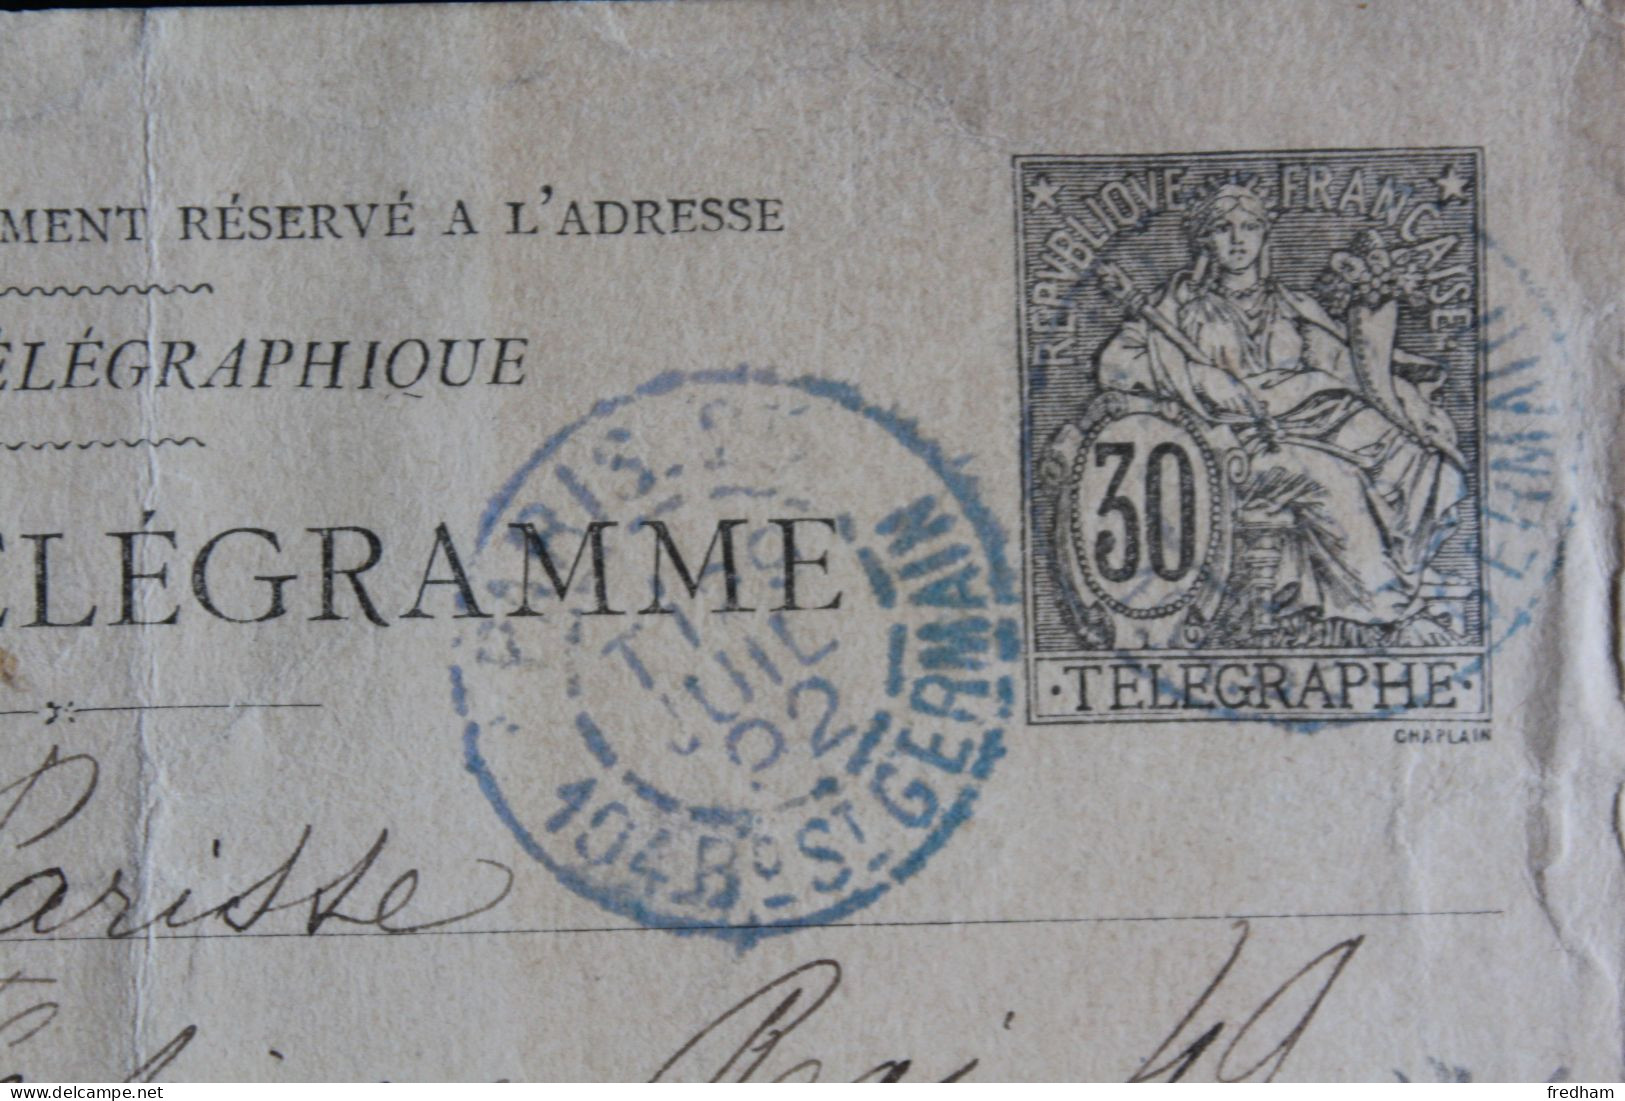 1892 CARTE TELEGRAMME TYPE CHAPLAIN 30C NOIR CAD PARIS 25 104 BD ST GERMAIN 29 JUIL 92 - Telegraphie Und Telefon